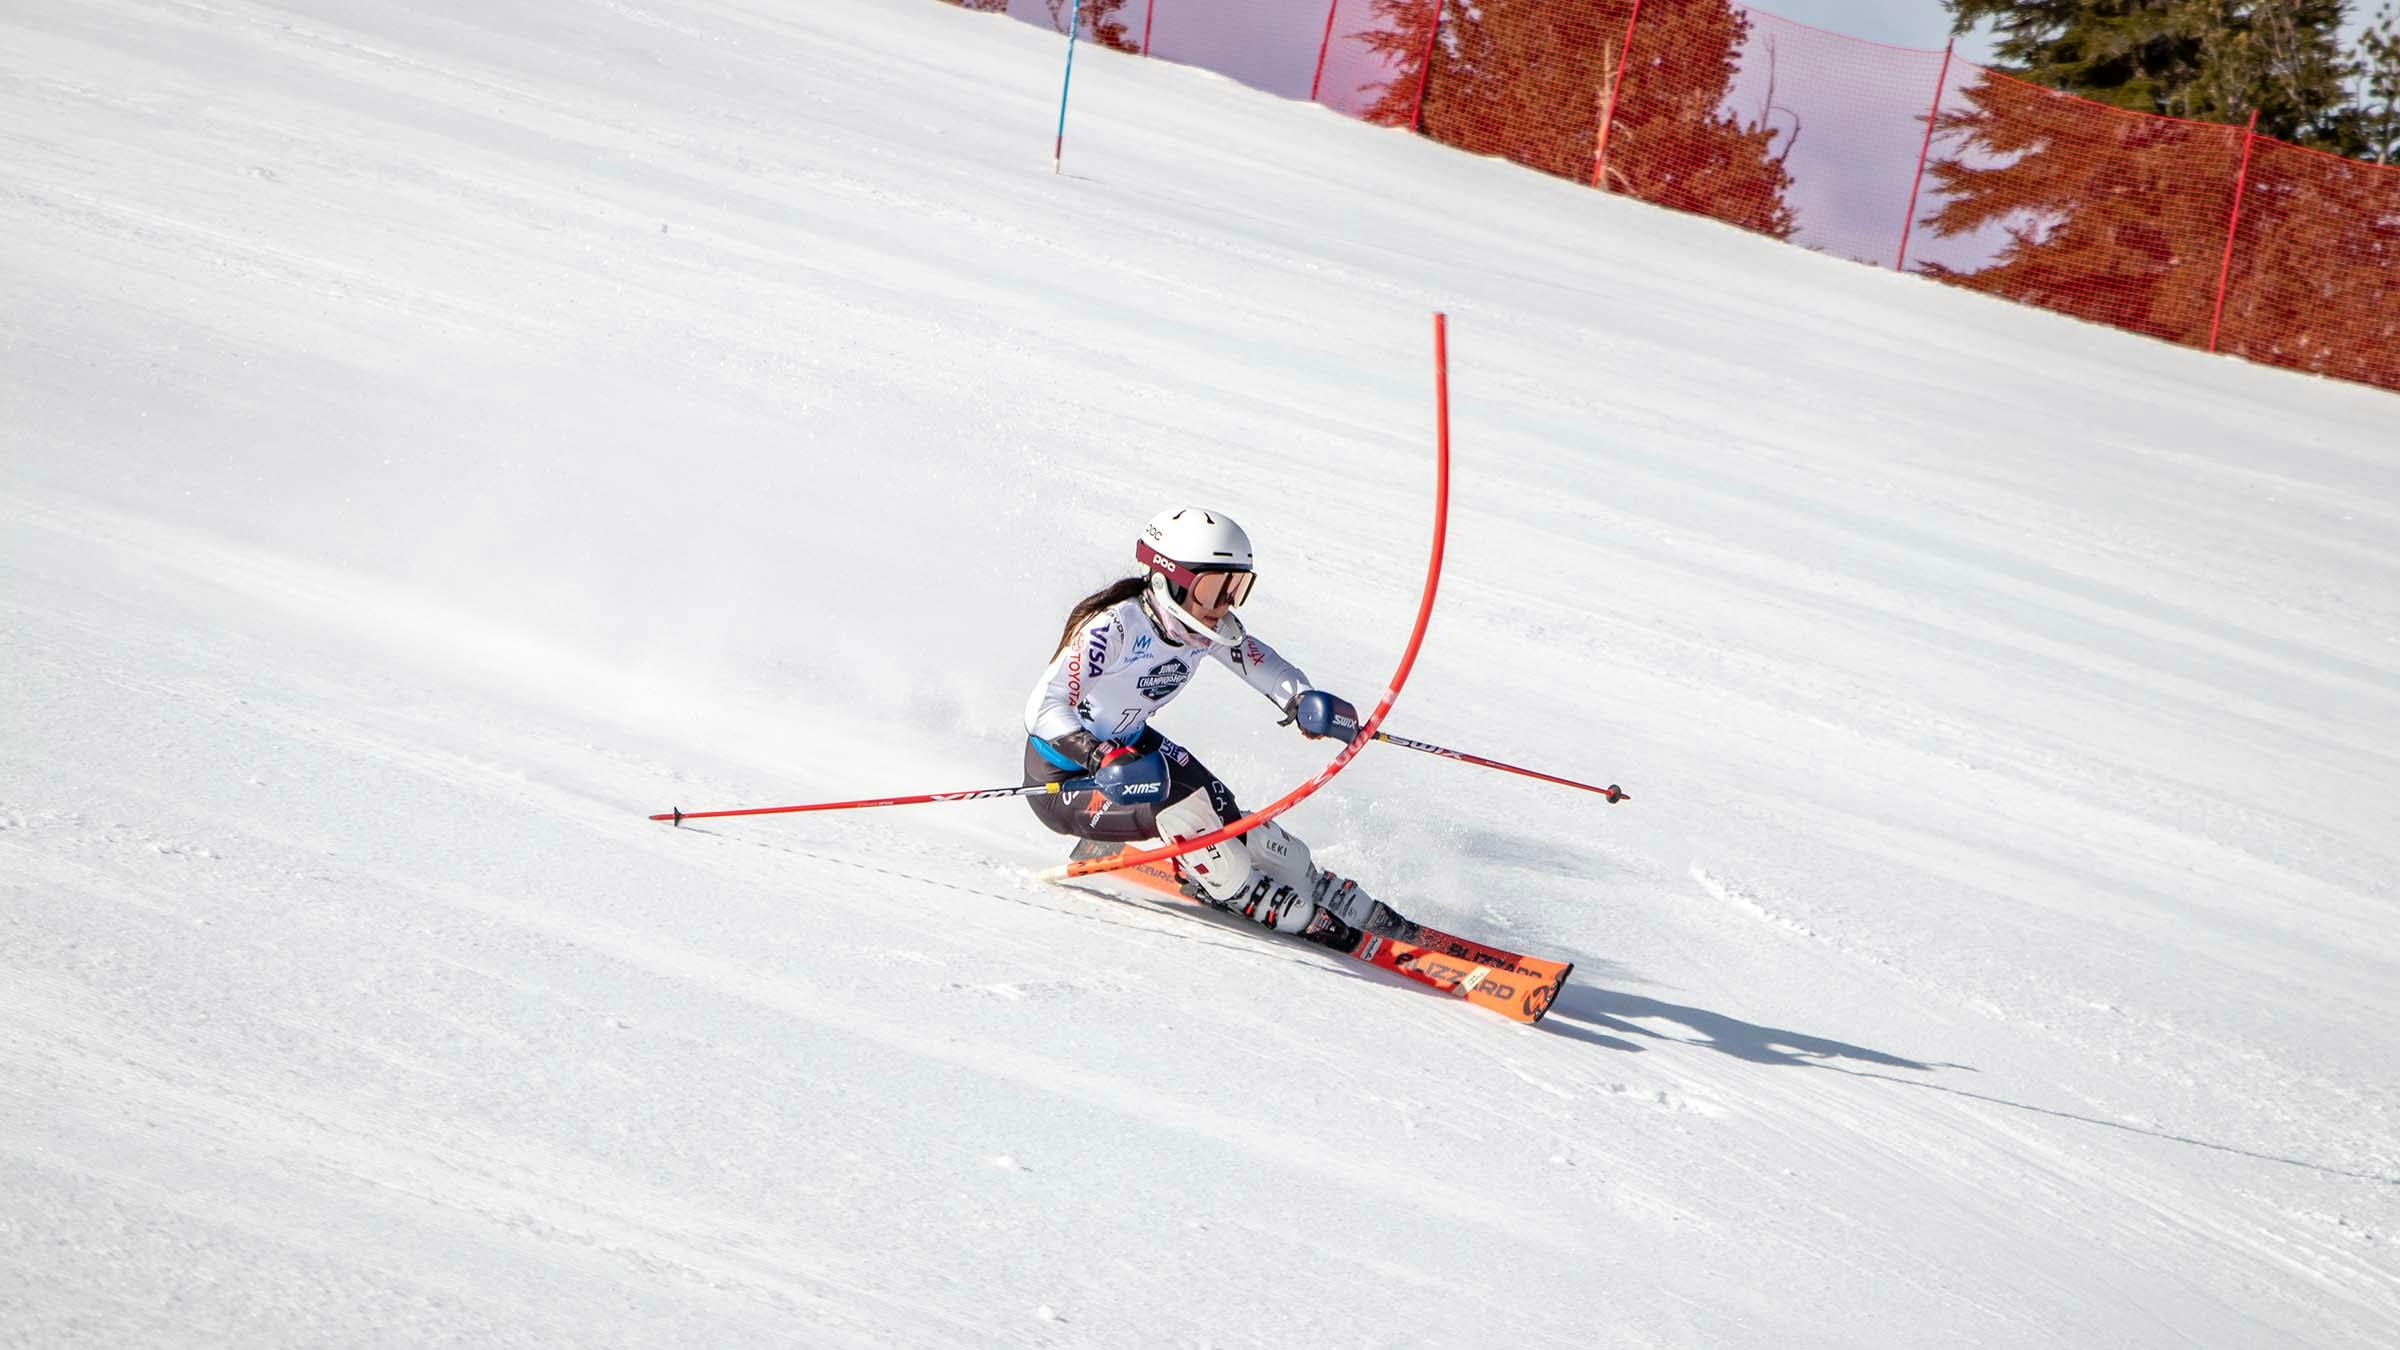 Slalom Ski Racer